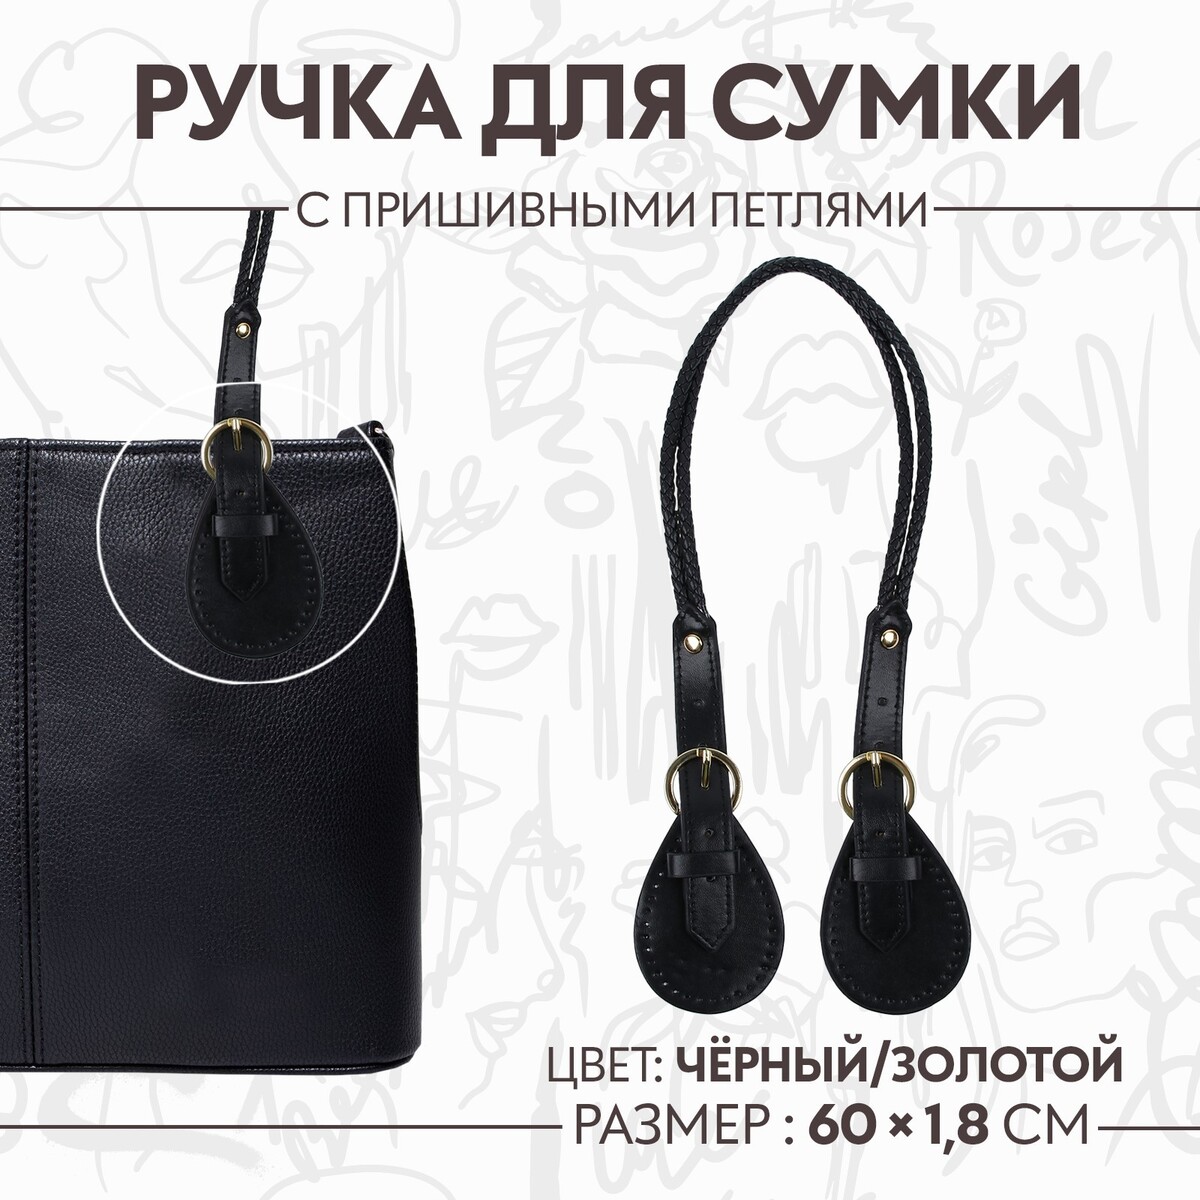 Ручка для сумки, шнуры, 60 × 1,8 см, с пришивными петлями 5,8 см, цвет черный/золотой ручка для сумки 60 × 1 см с пришивными петлями 3 5 см серебряный